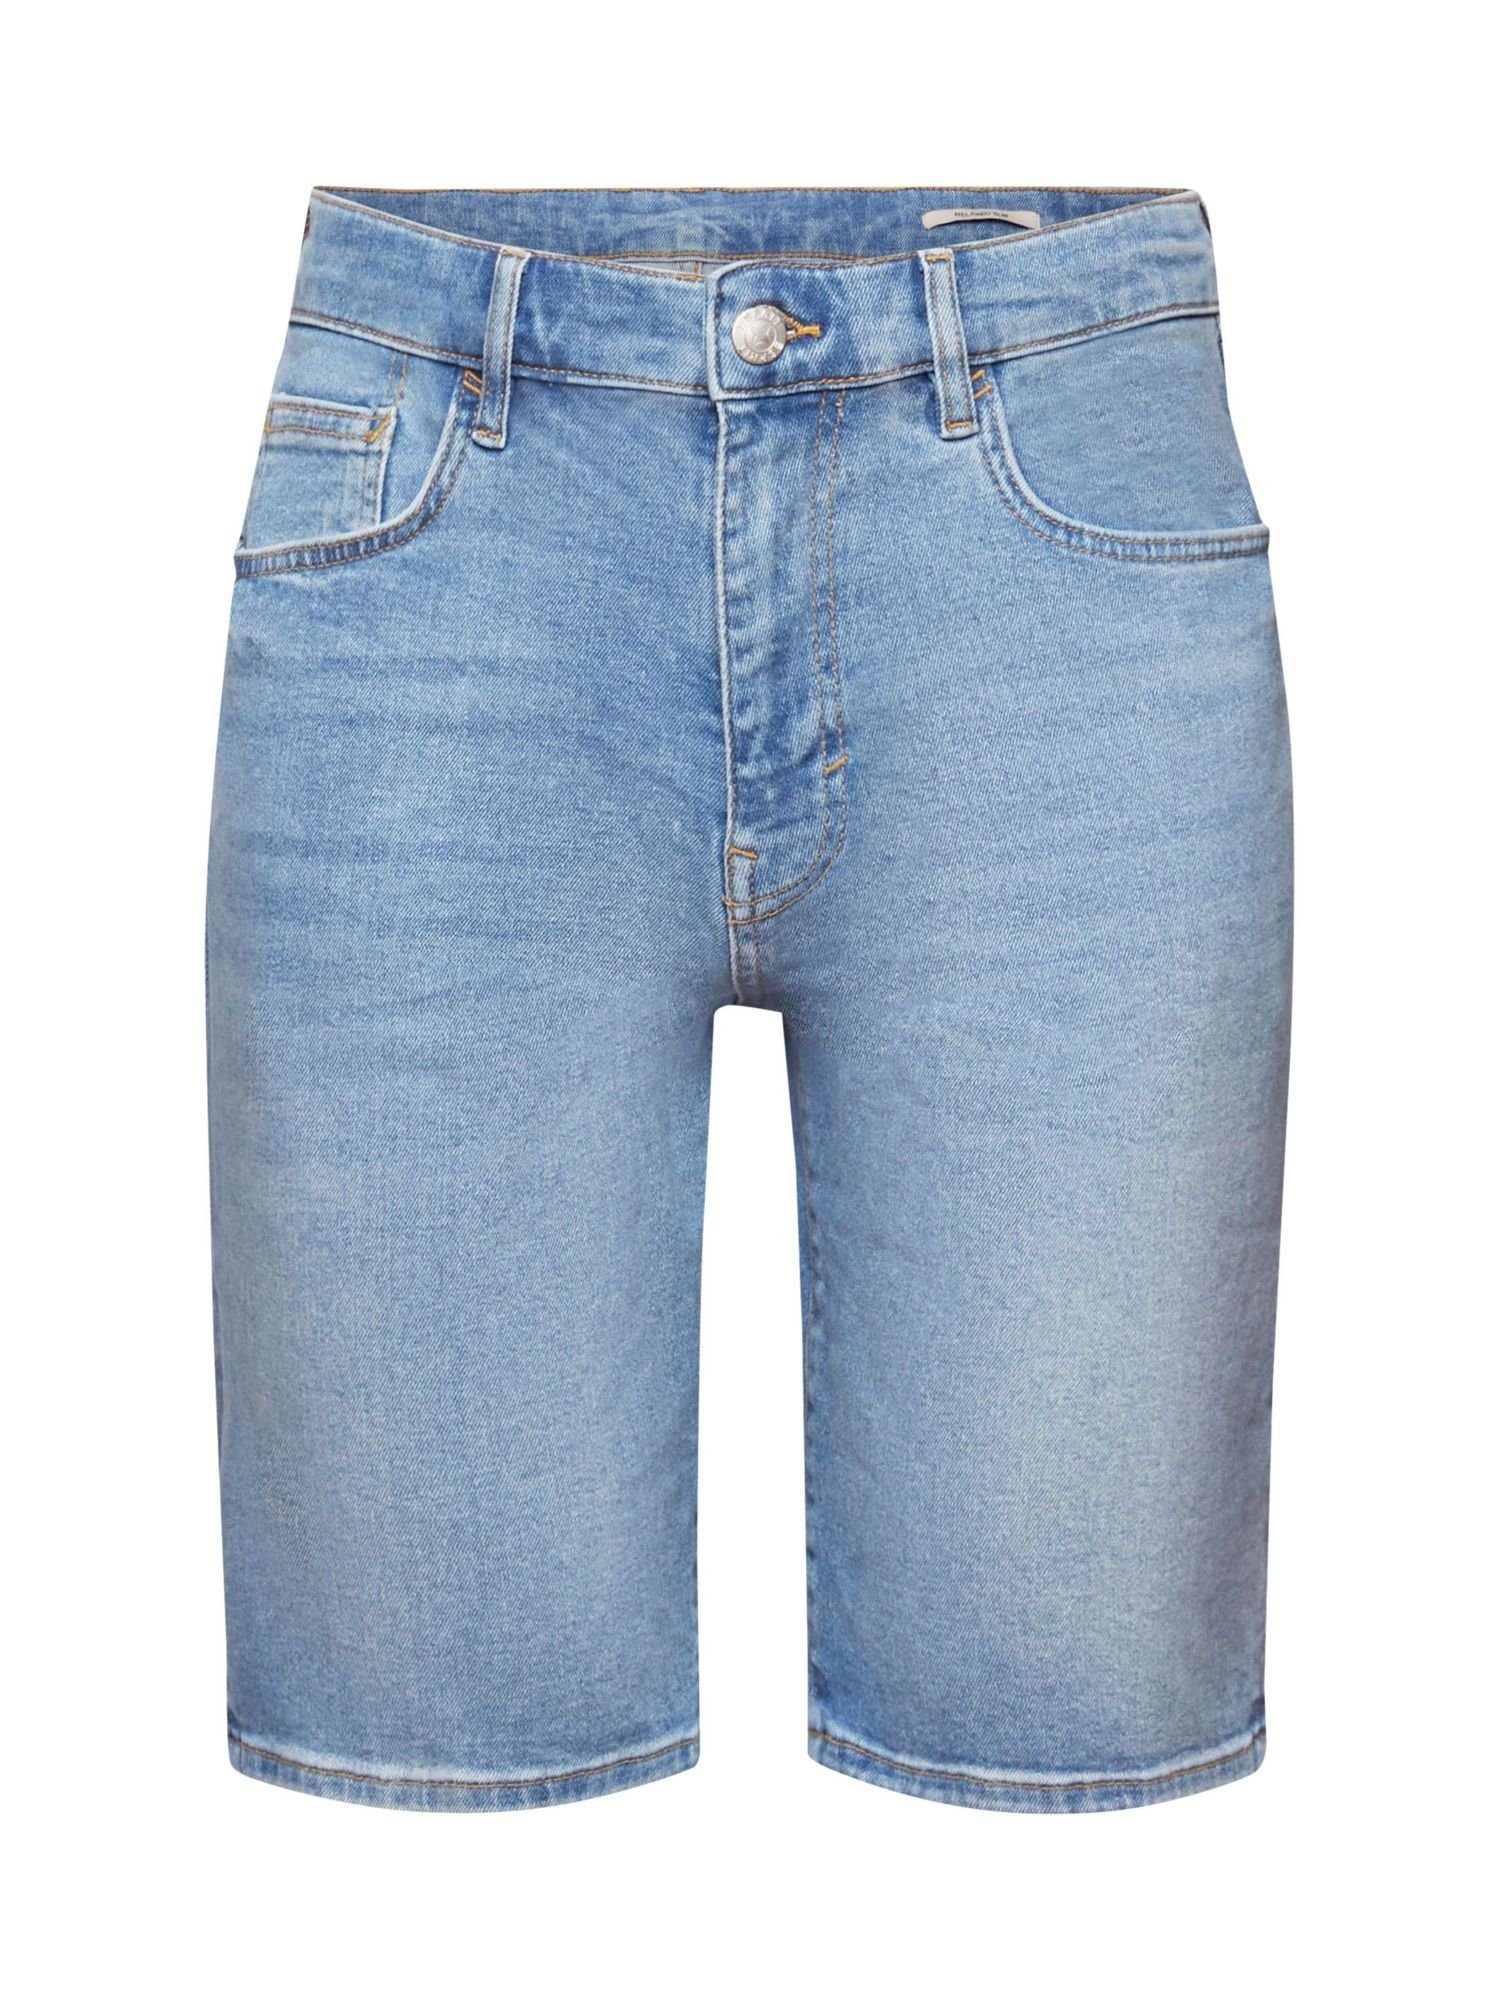 Esprit Jeansshorts Lockere Jeansshorts in schmaler Passform BLUE MEDIUM WASHED